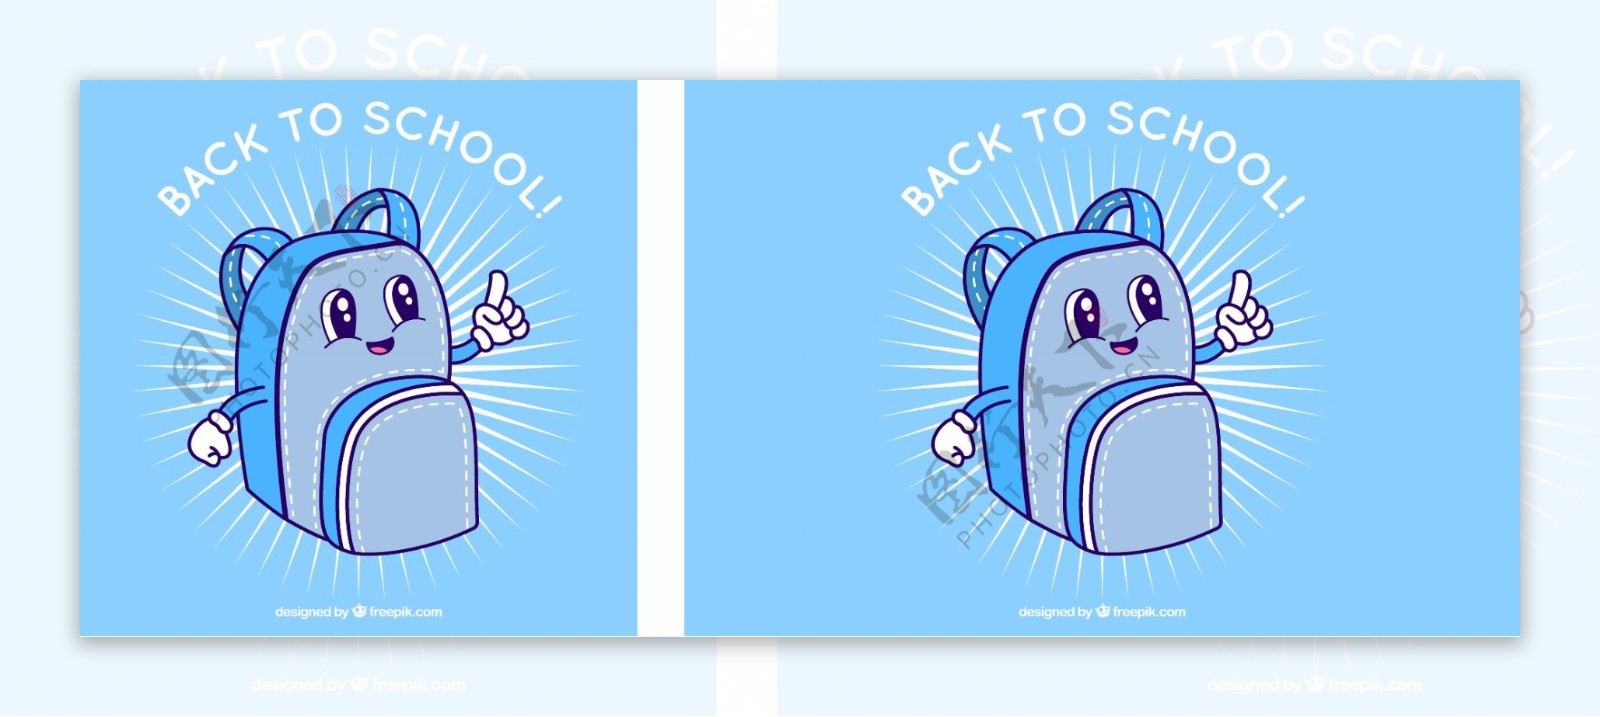 蓝色背包返回学校